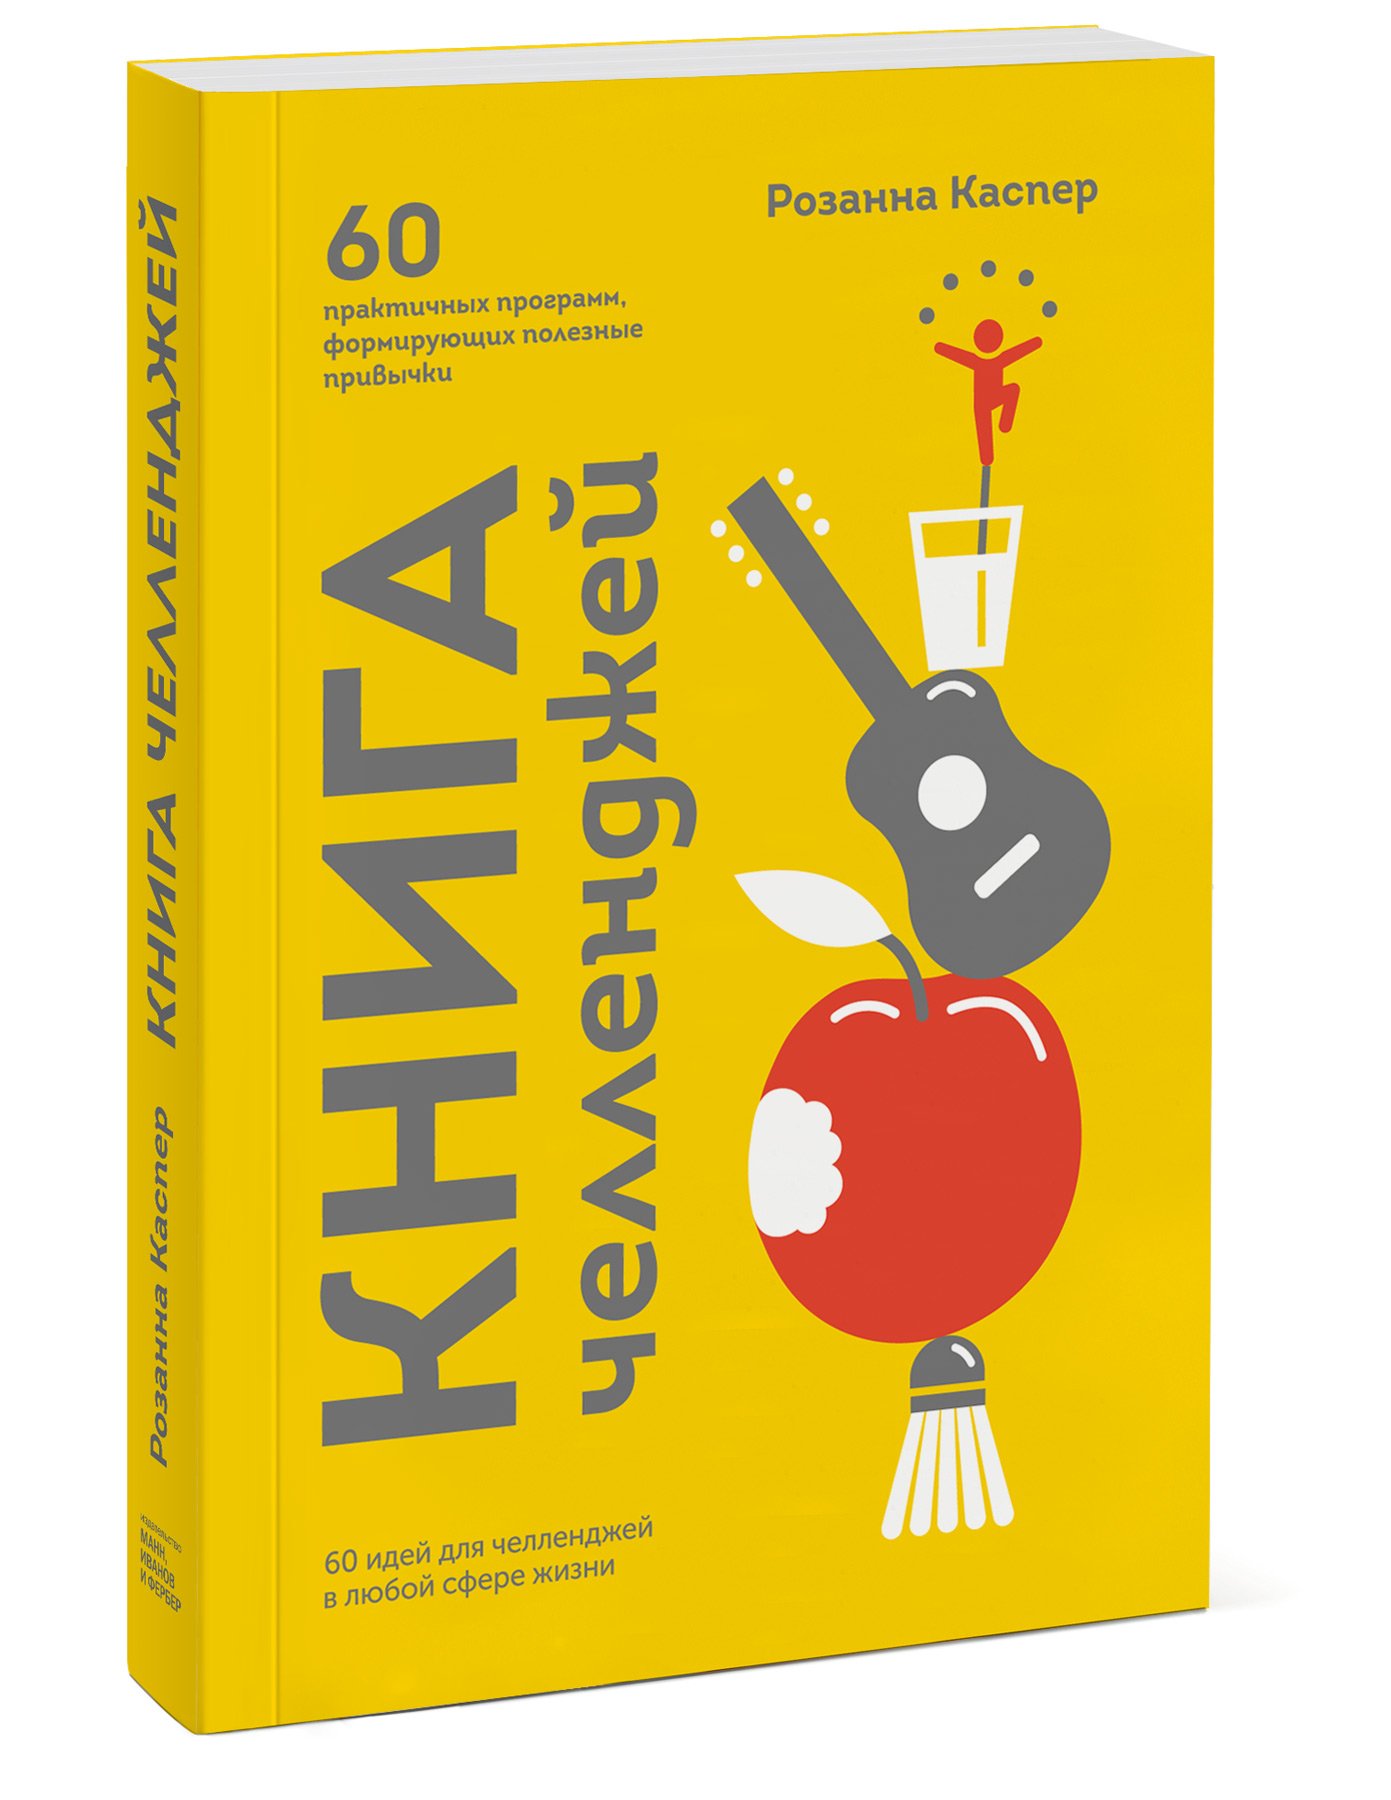 Книга челленджей. 60 практичных программ, формирующих полезные привычки. Каспер Розанна